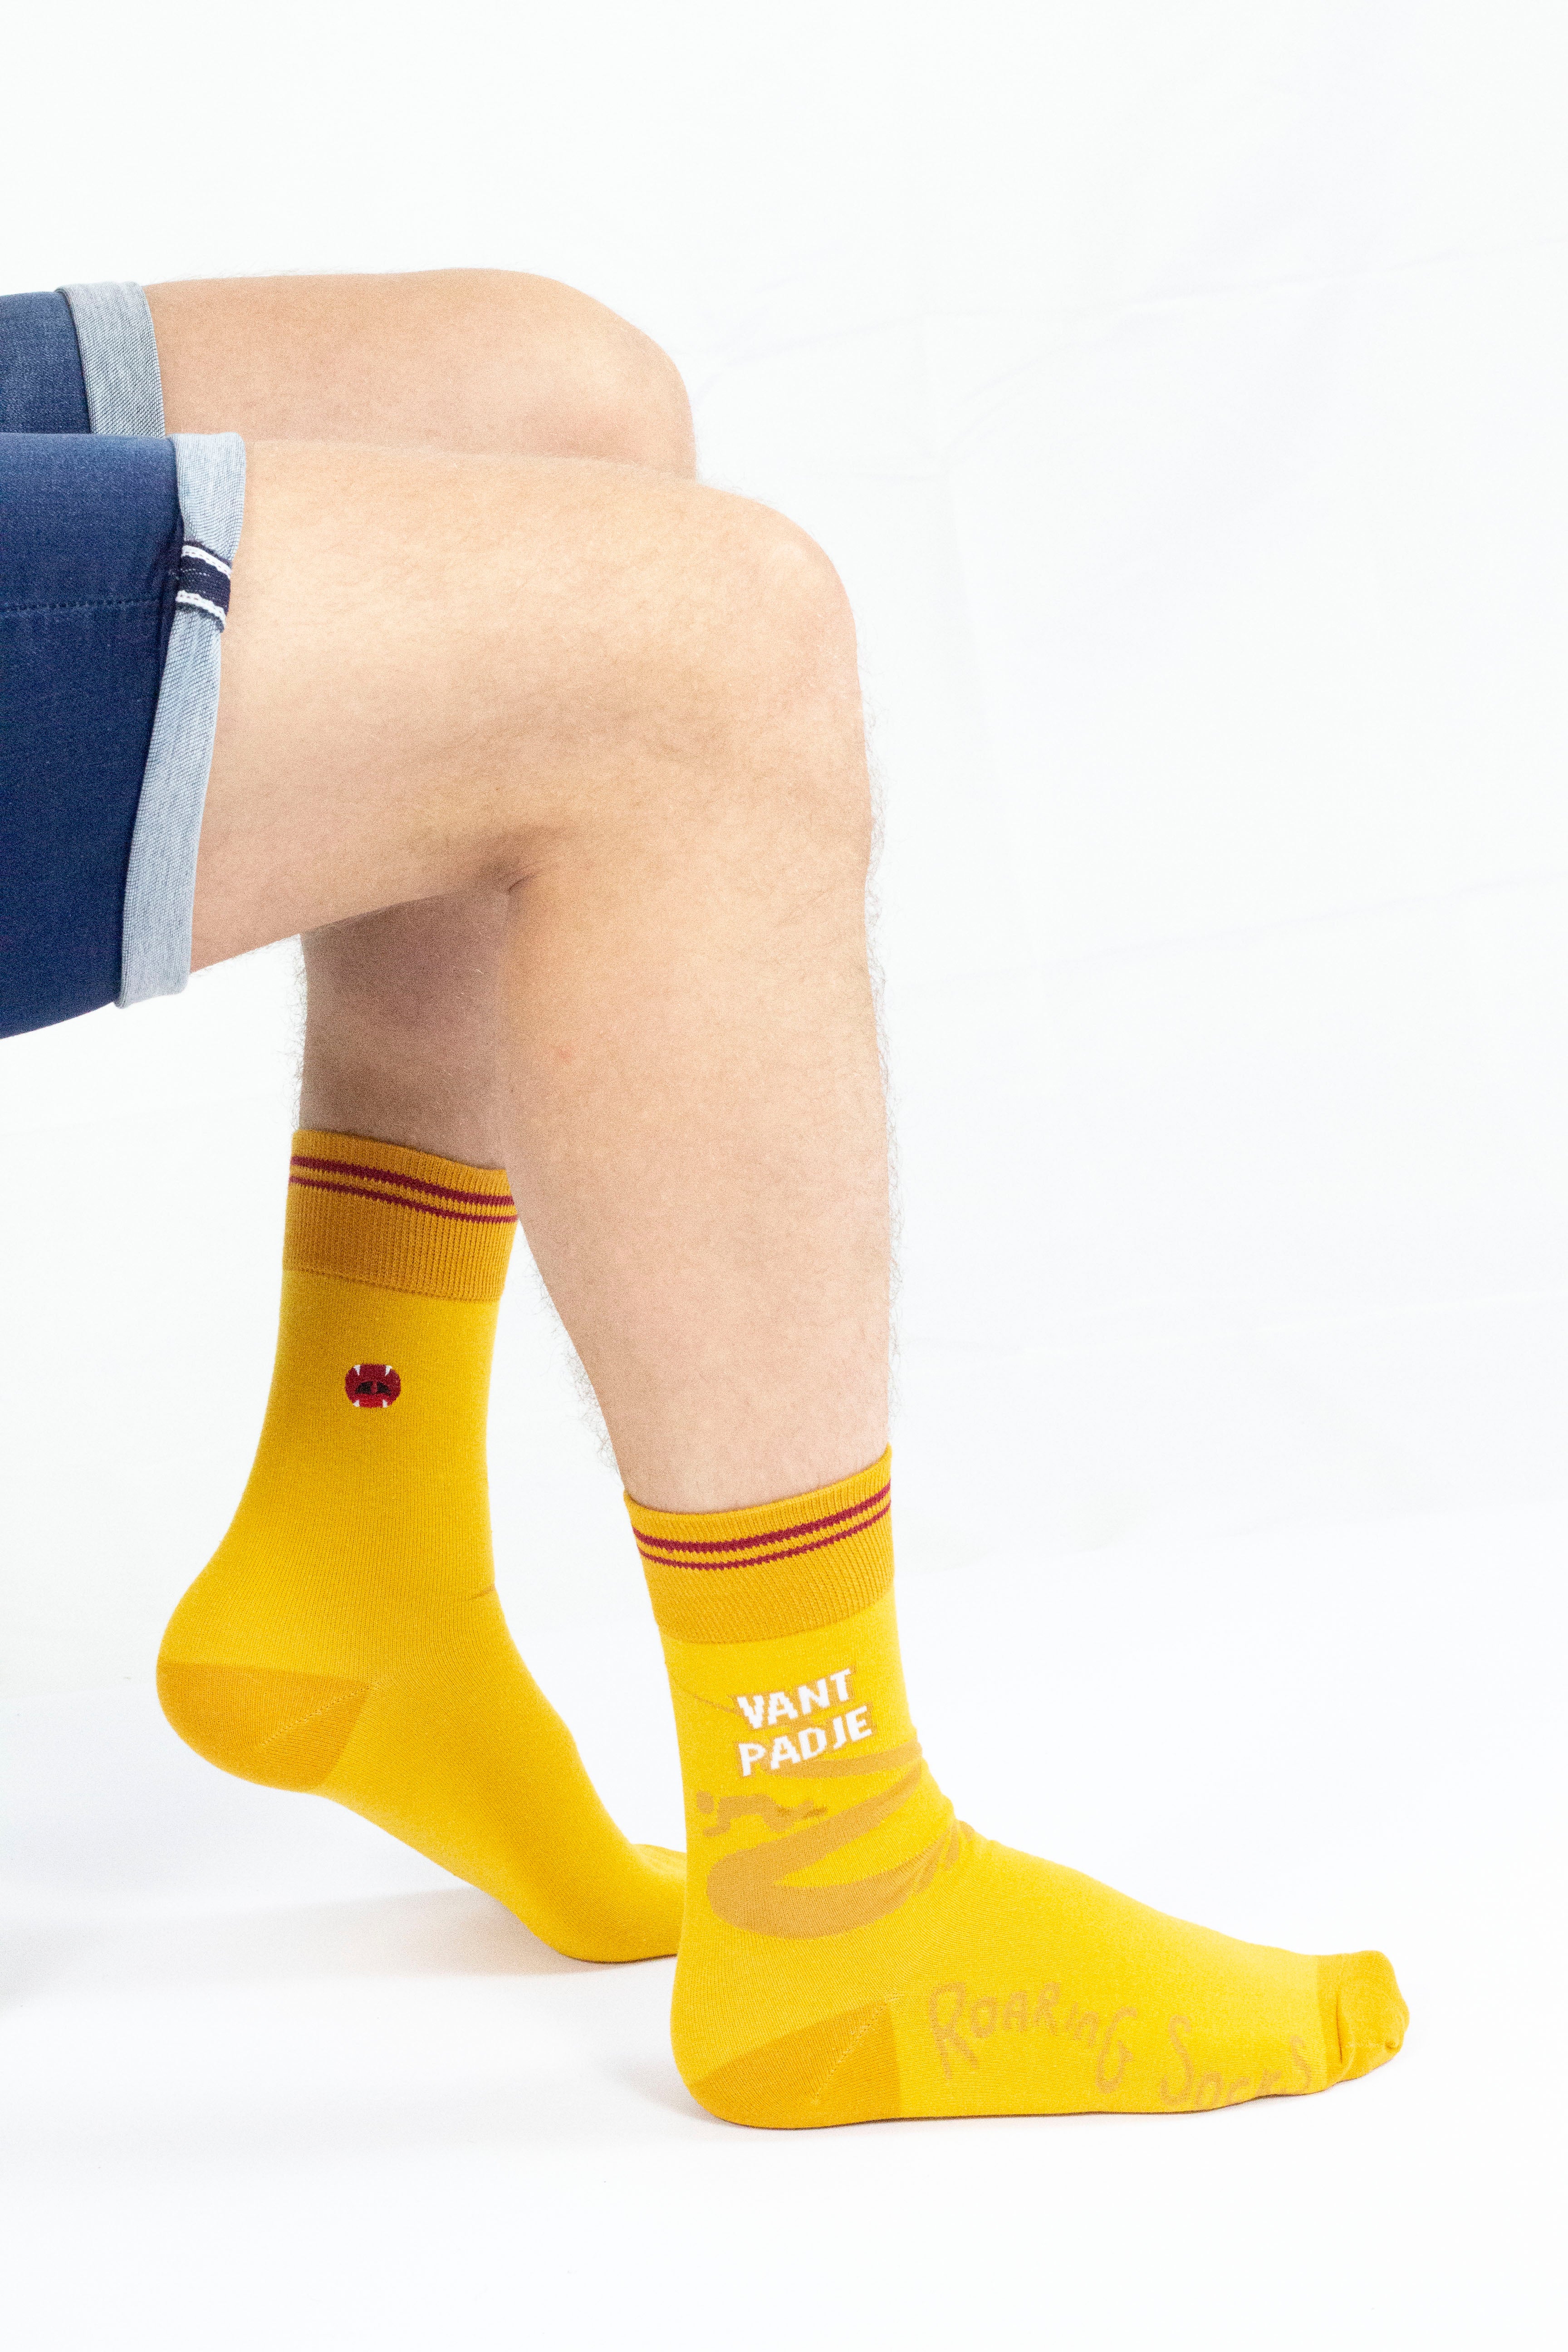 Roaring Socks - Sokken – Van’t padje - Geel – Scheef gaan – Zuipen – Drinken – Alcohol - Bier - Café - Katoen - Leuk - Grappig - Vrolijk - Fashion – Cadeau